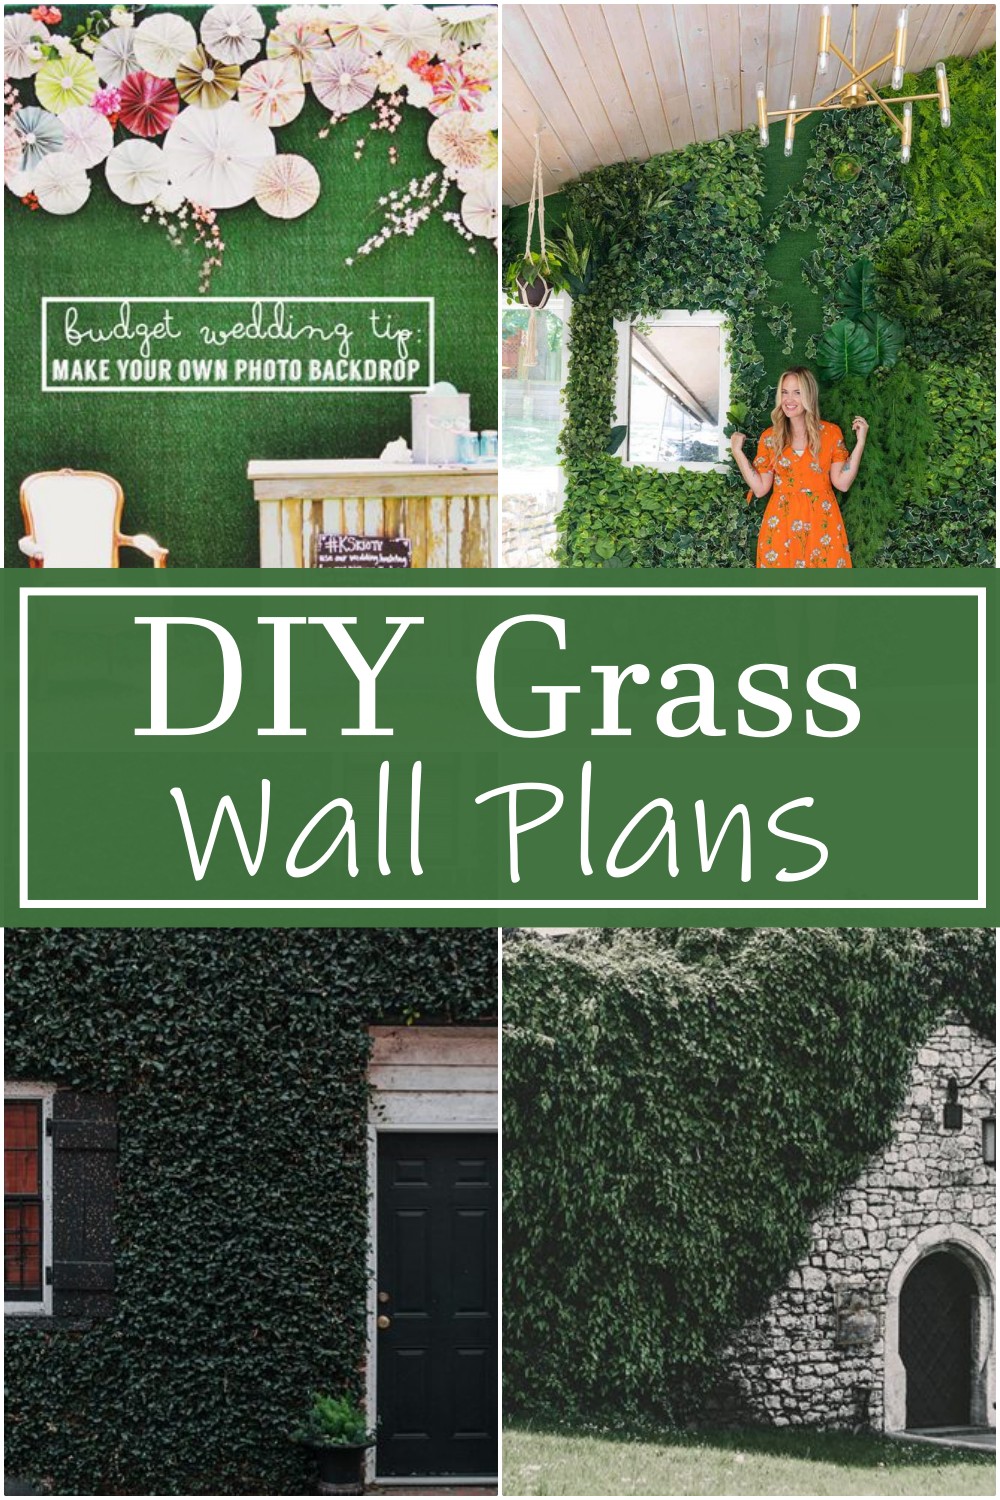 DIY Grass Wall Plans